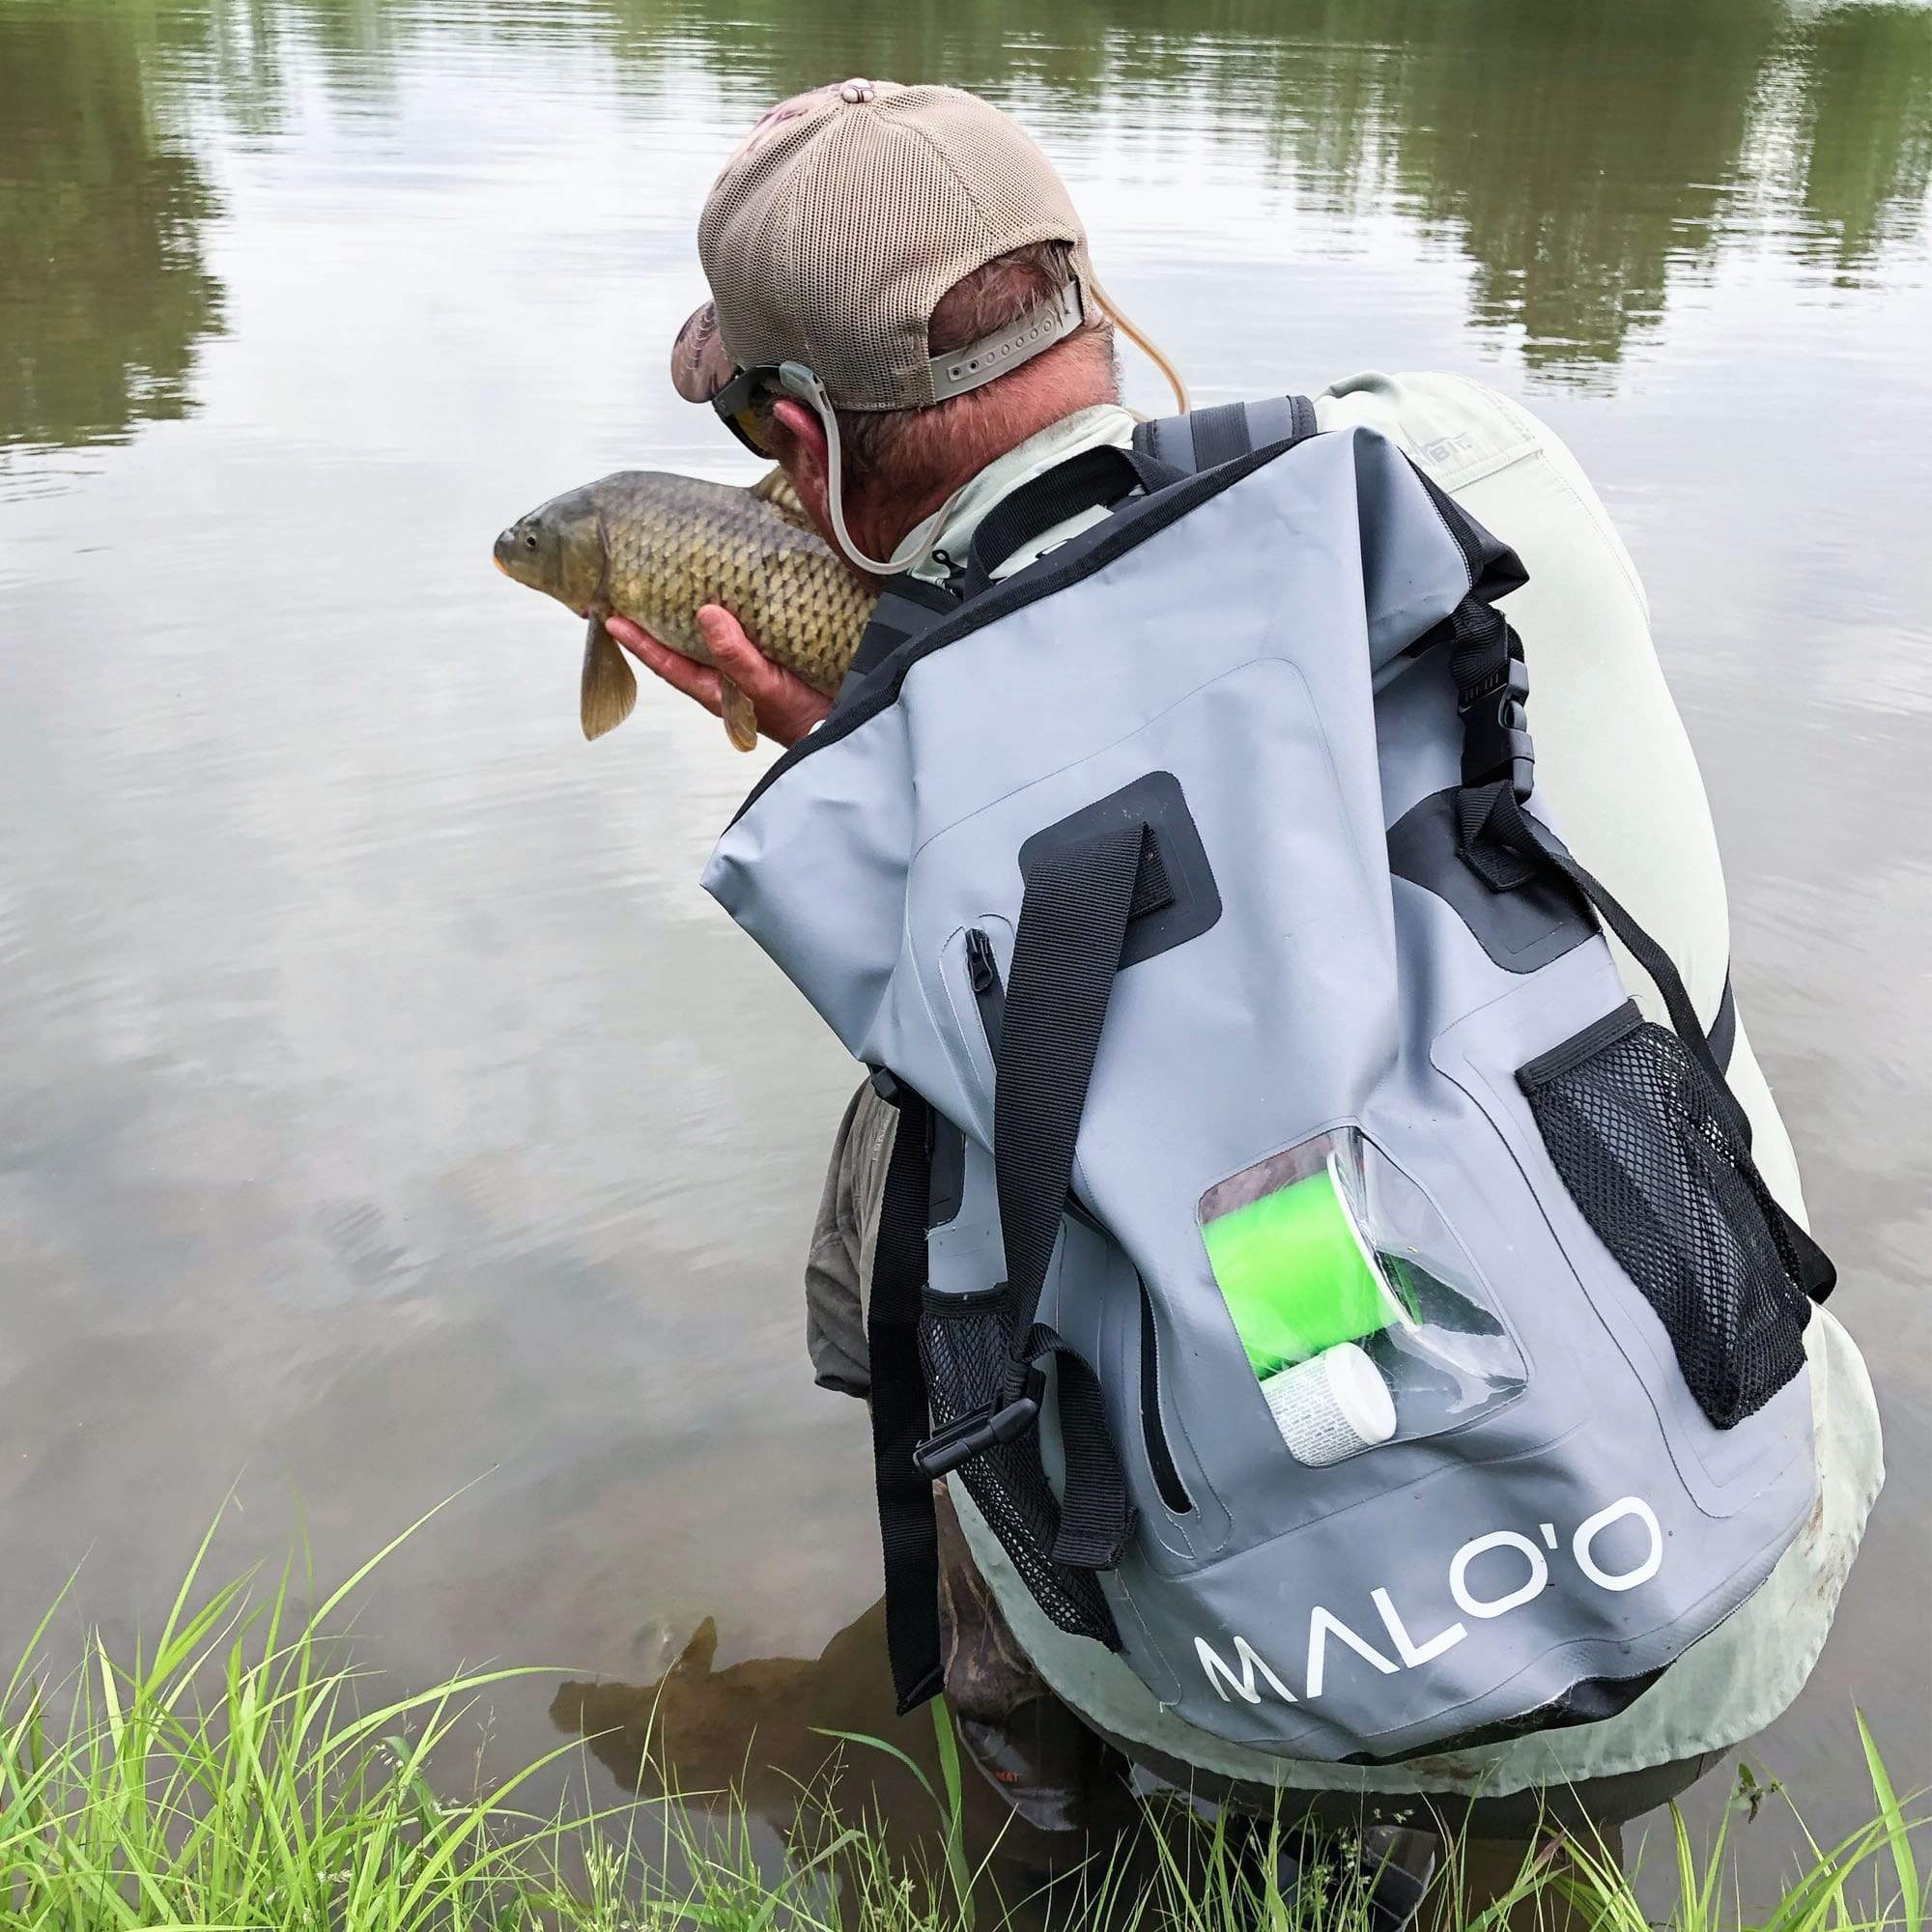 Malo&#39;o 30L Waterproof Backpack Malo&#39;o DryPack Backpack